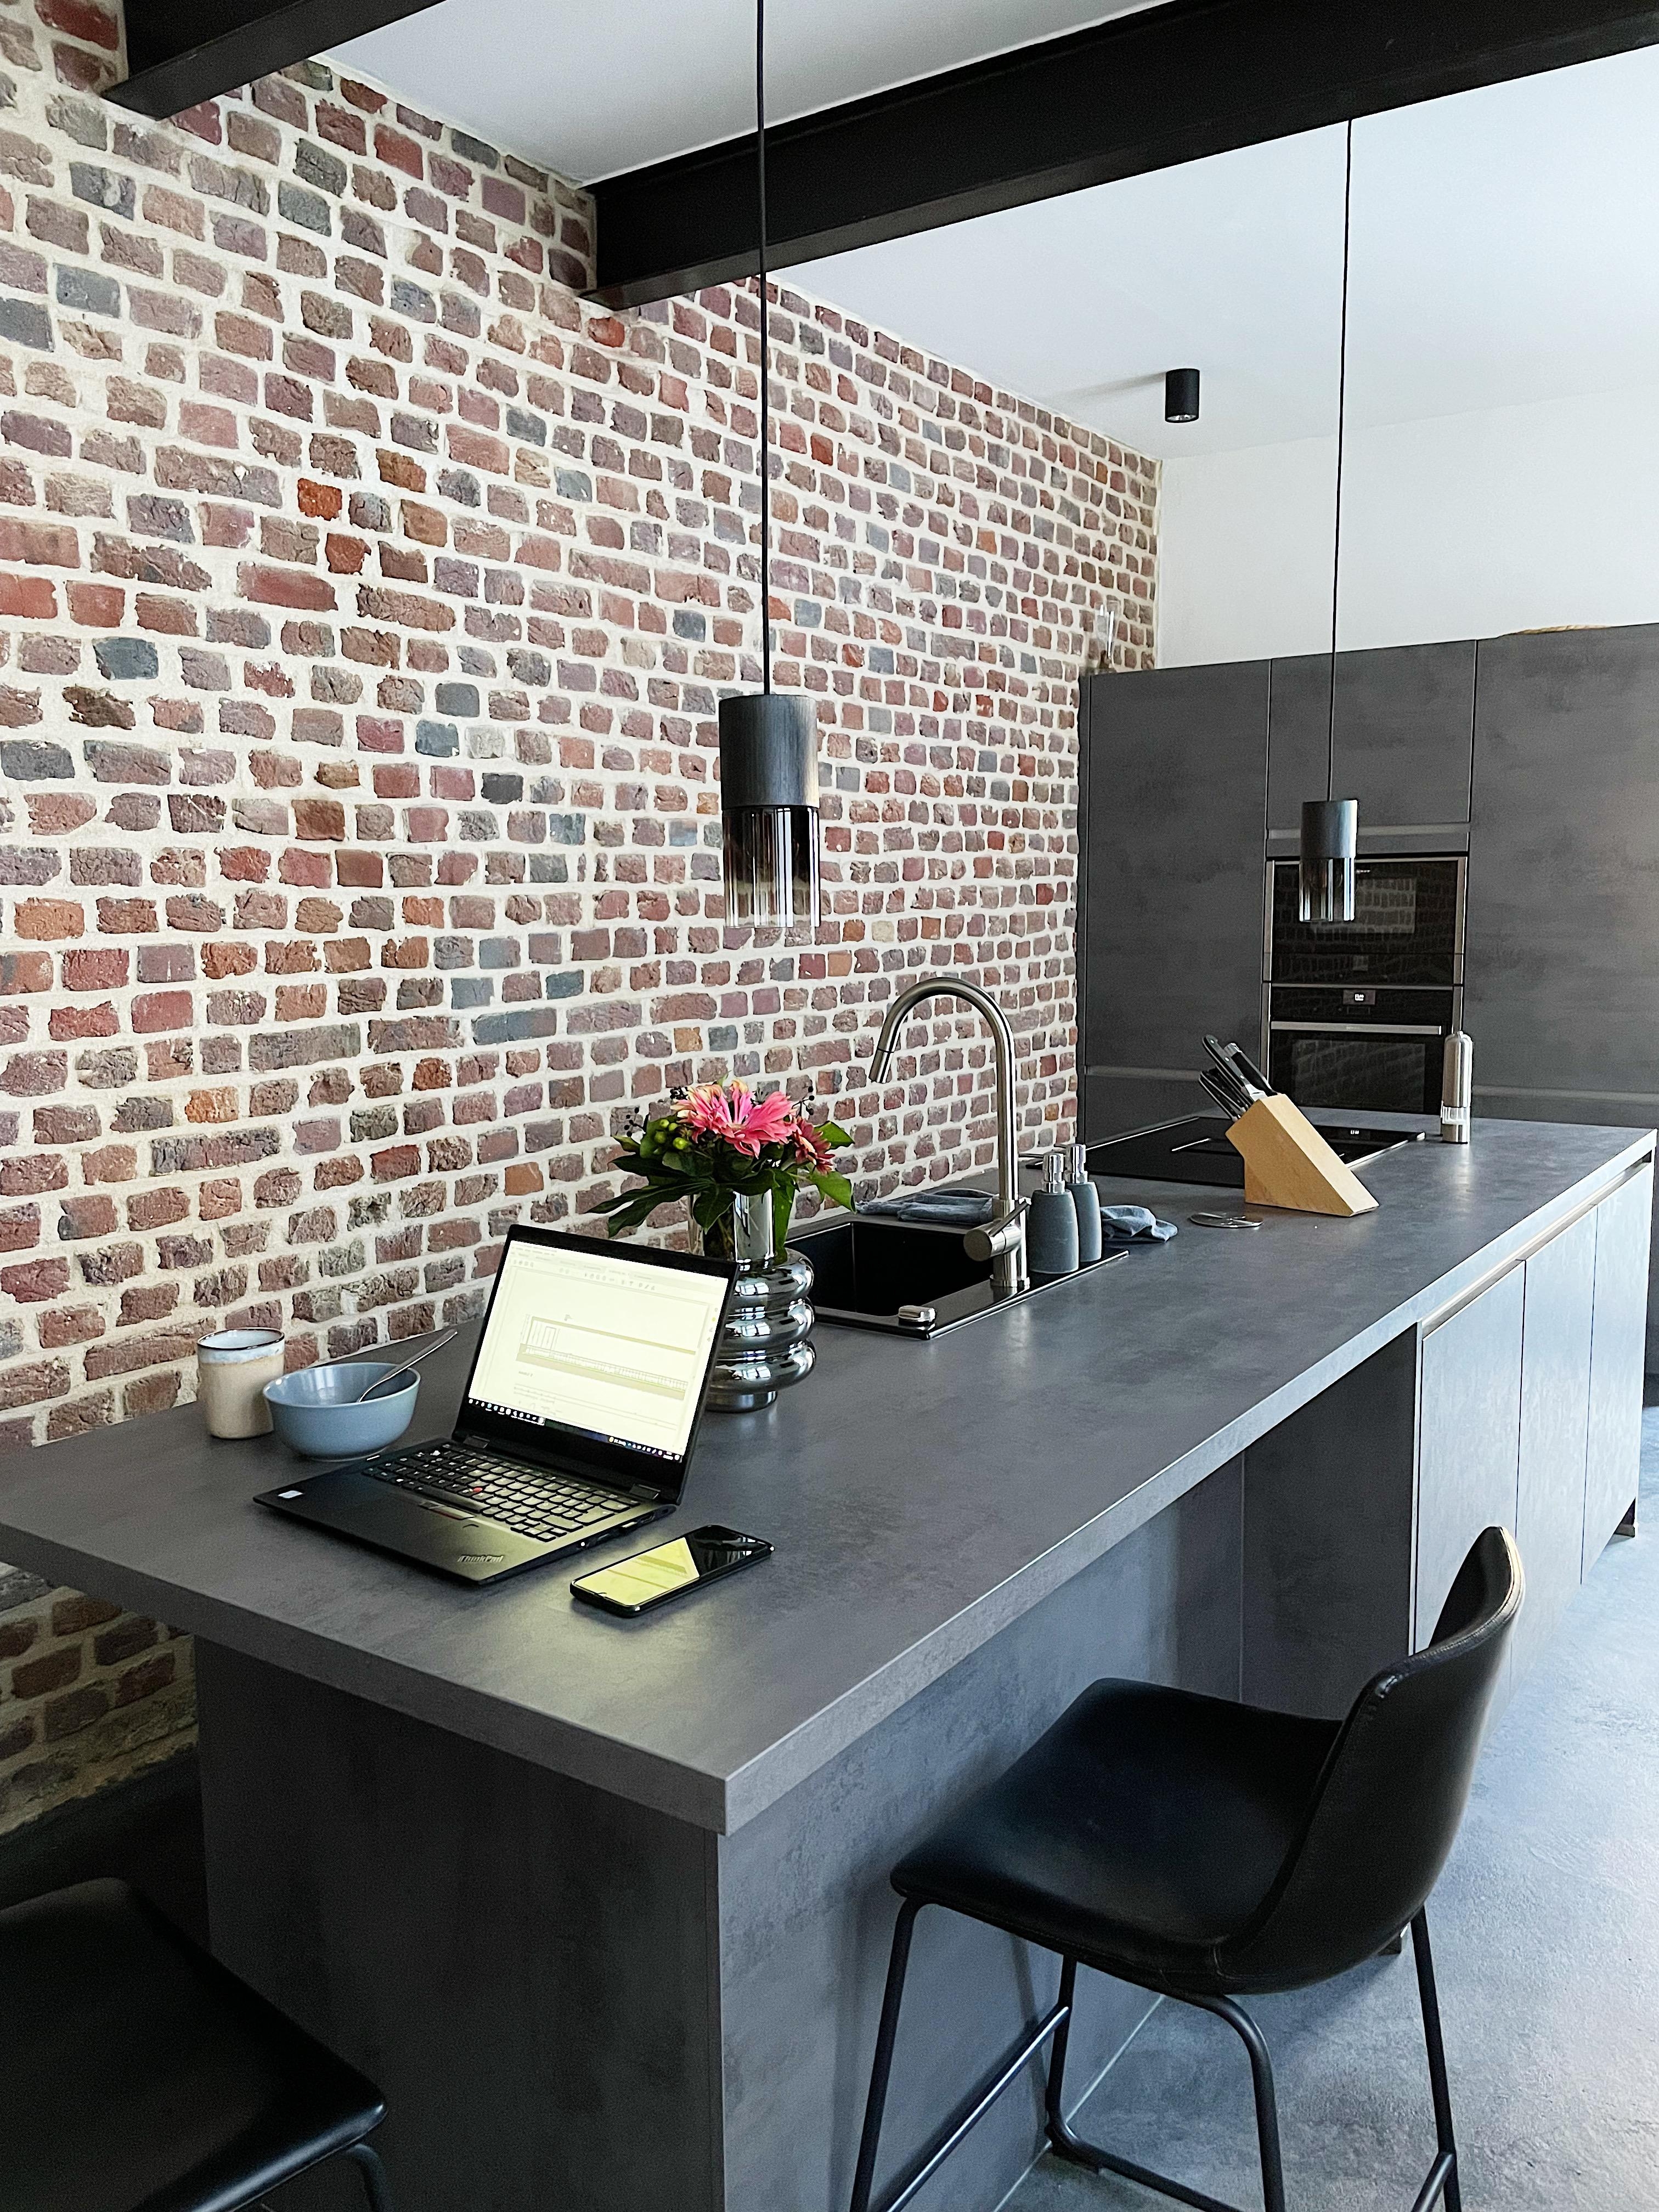 küche aka home office und quelle des kaffees. ☕️ #küche #altbau #kaffeliebe 